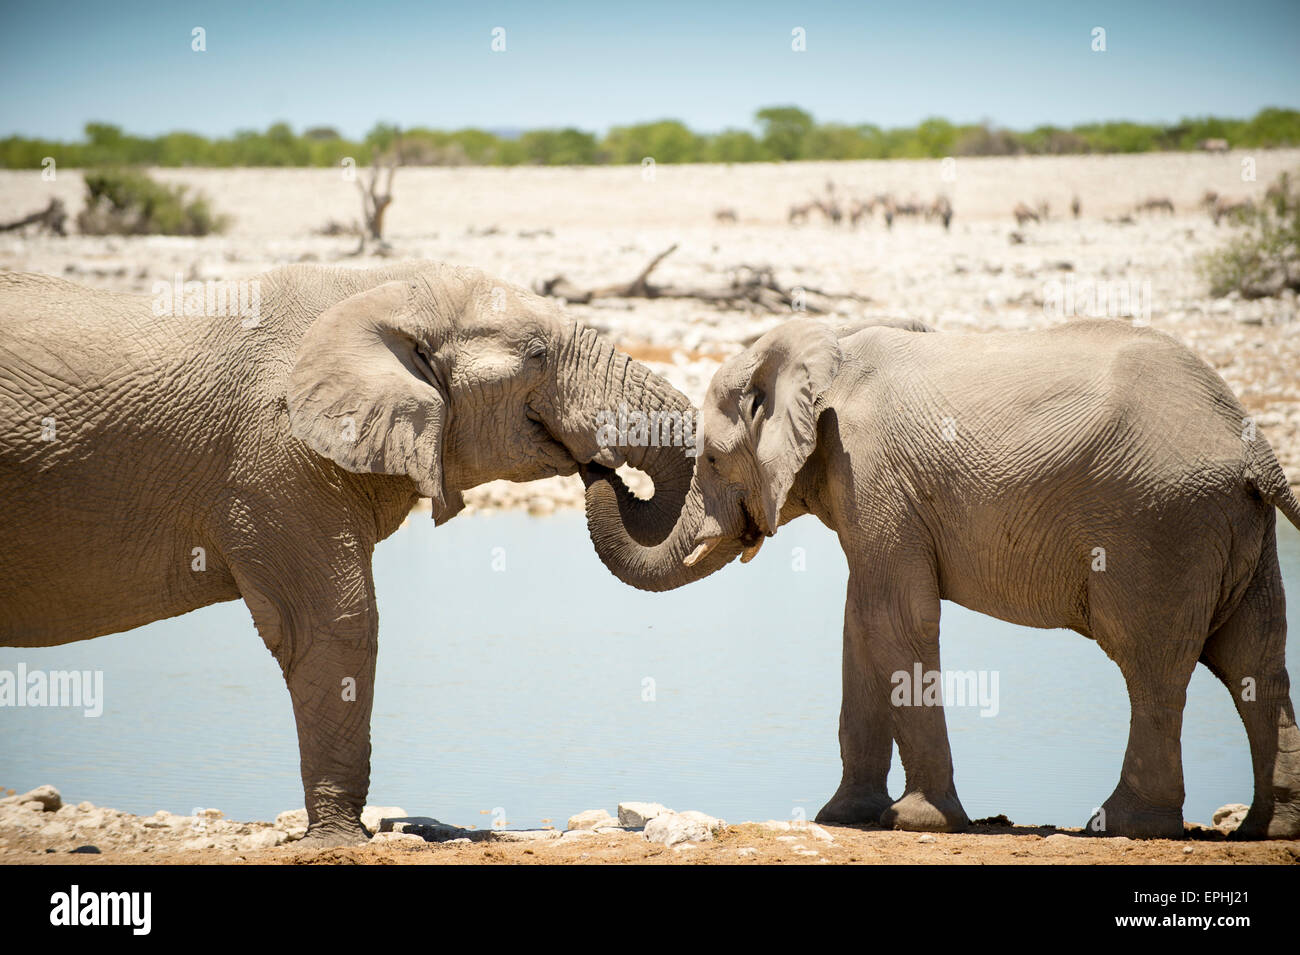 Africa, Namibia. Etosha National Park. Two elephants playing near waterhole. Stock Photo